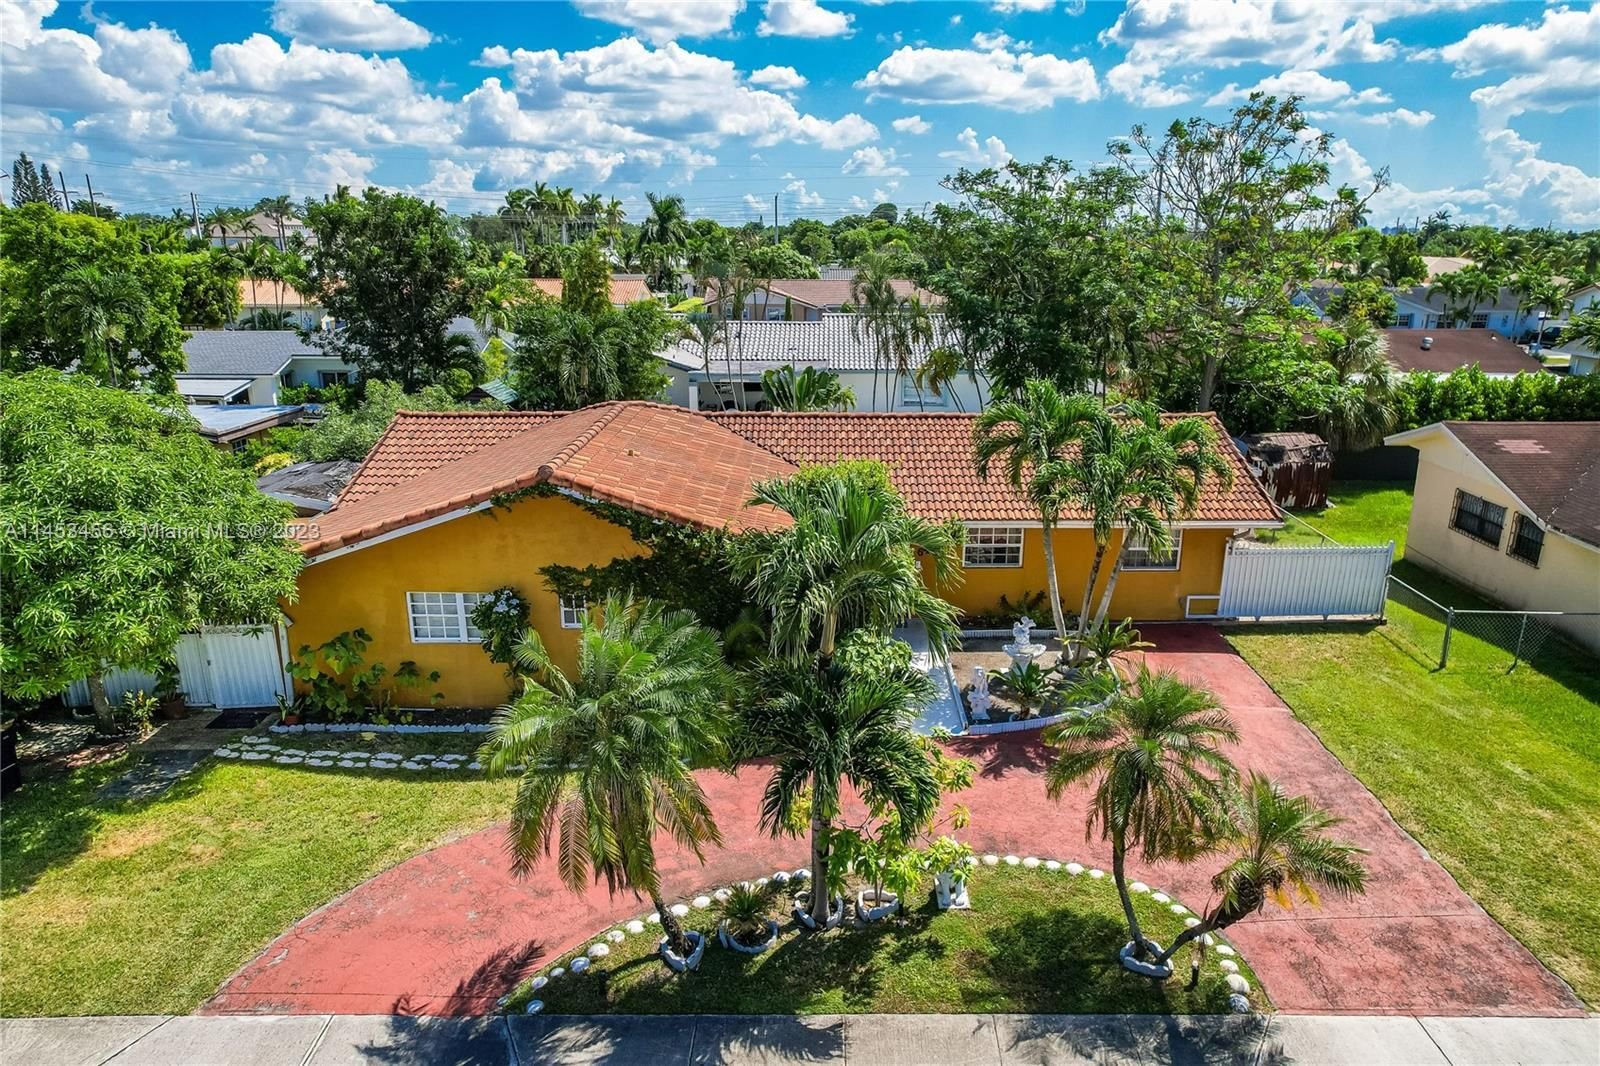 Real estate property located at 6425 107th Ave, Miami-Dade County, MONIQUE SUB, Miami, FL